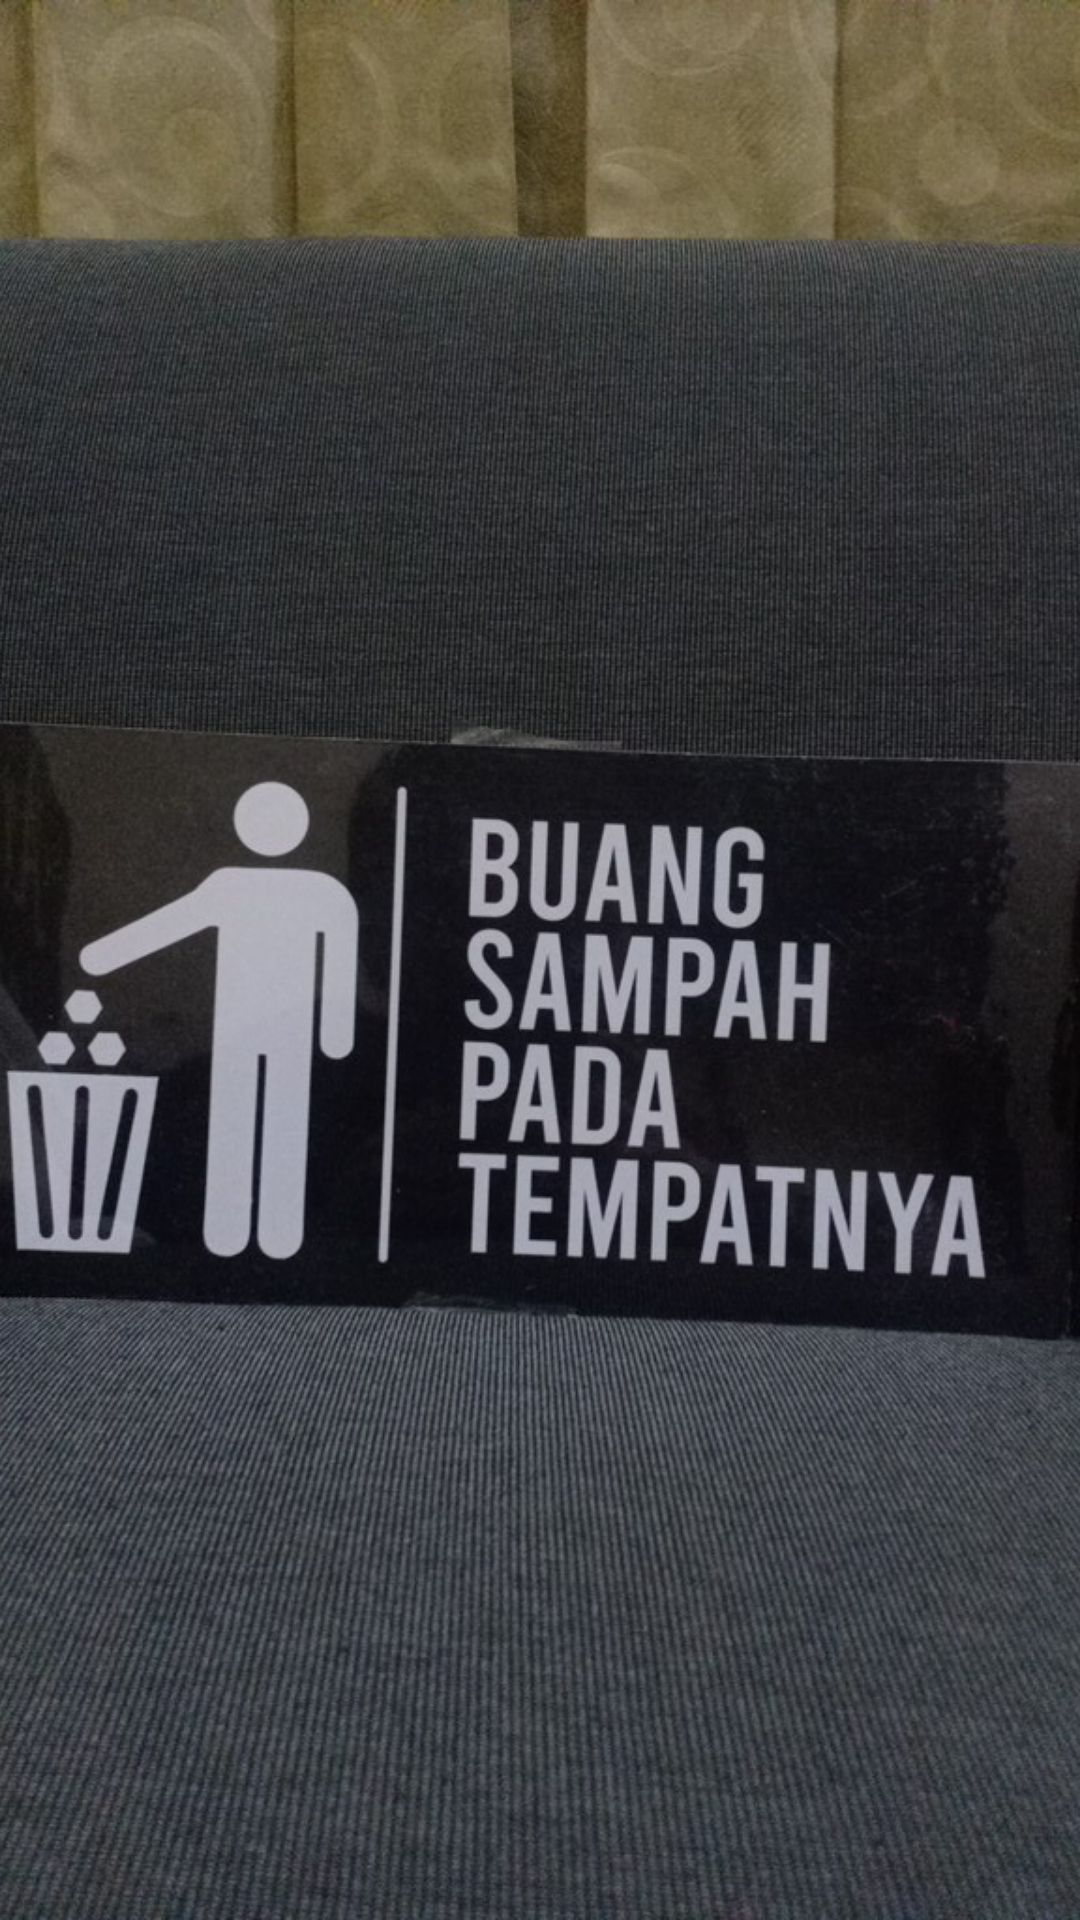 Papan Tanda Buang Sampah - Sign Buang Sampah - Sign Trash - Wall Decor Signage